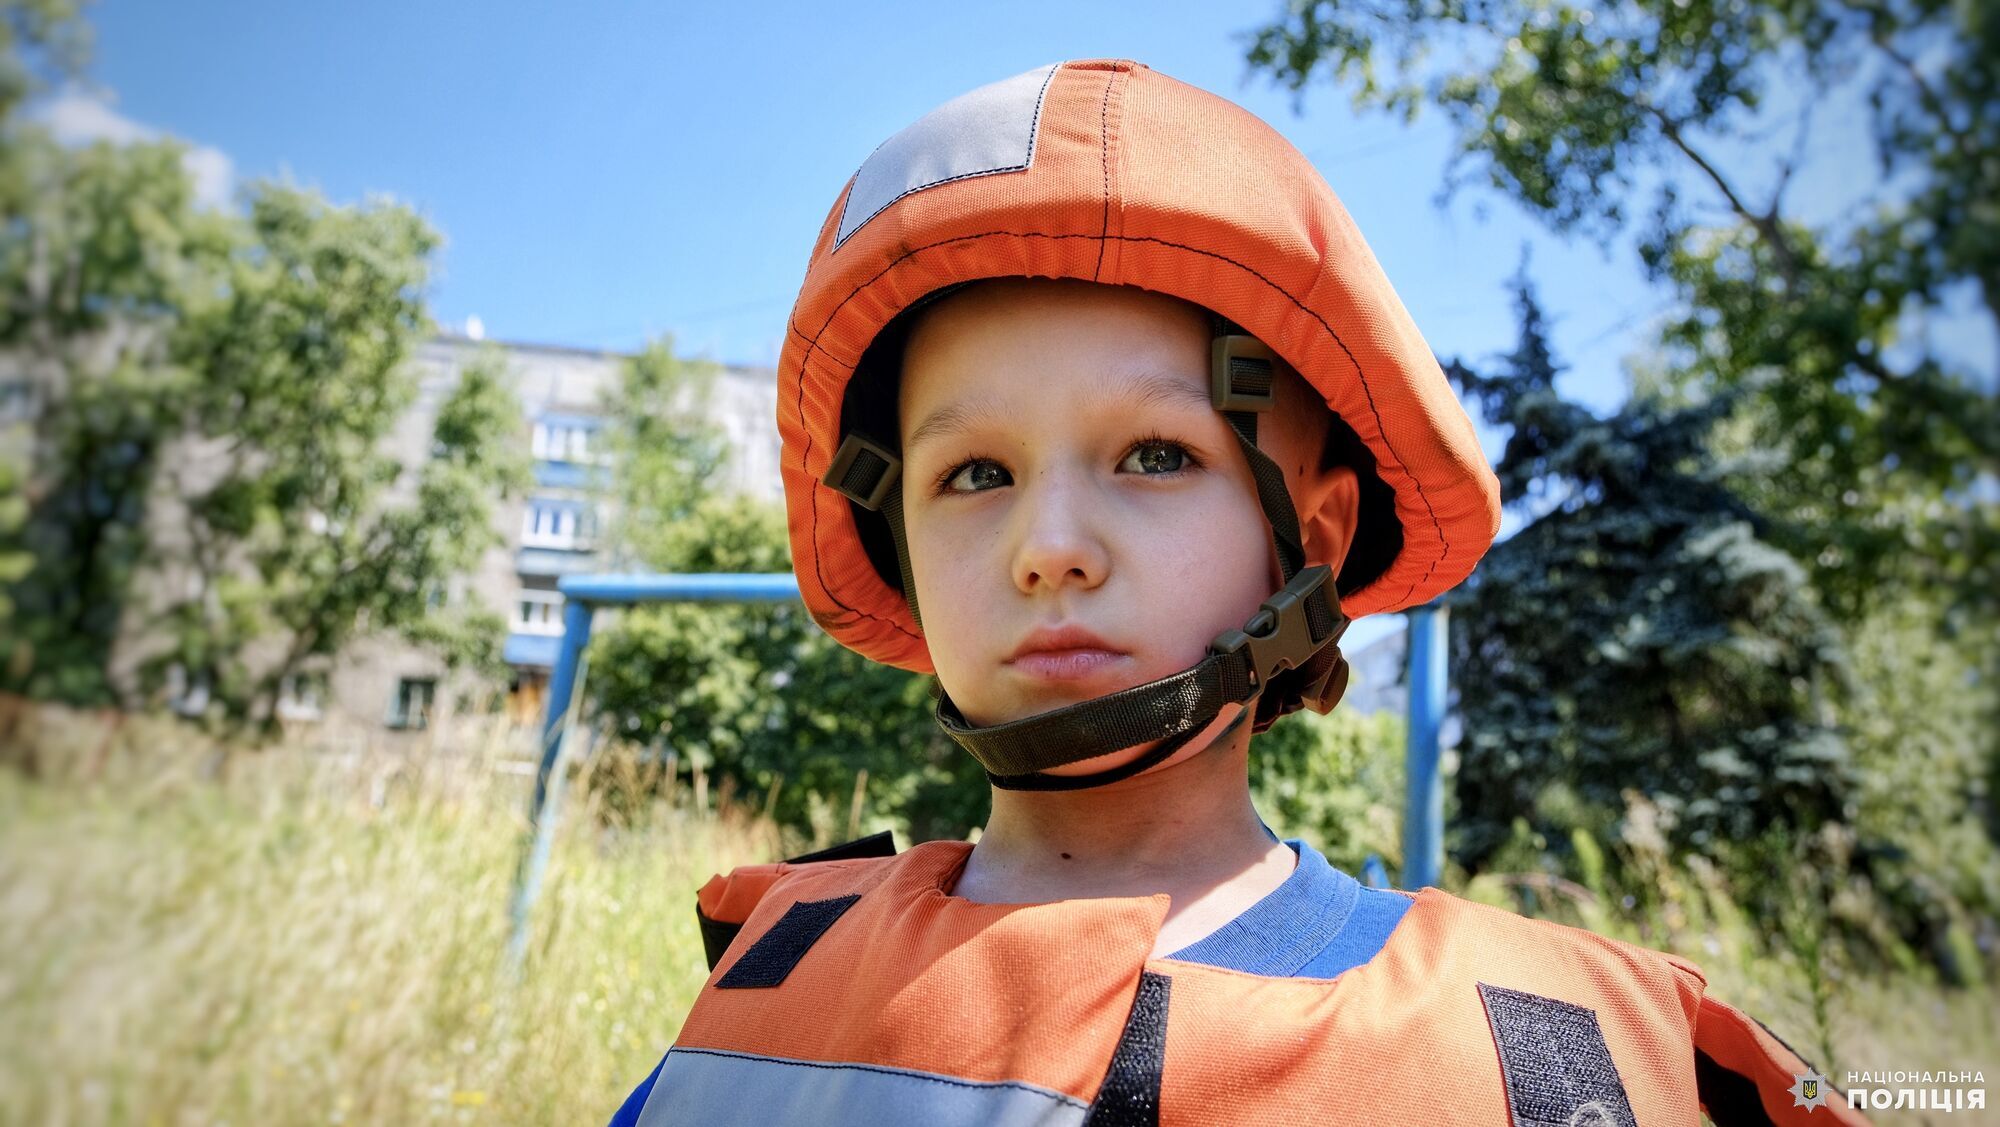 Мальчик мечтает стать президентом: из прифронтового города Донецкой области спасли мать с тремя малолетними детьми. Видео